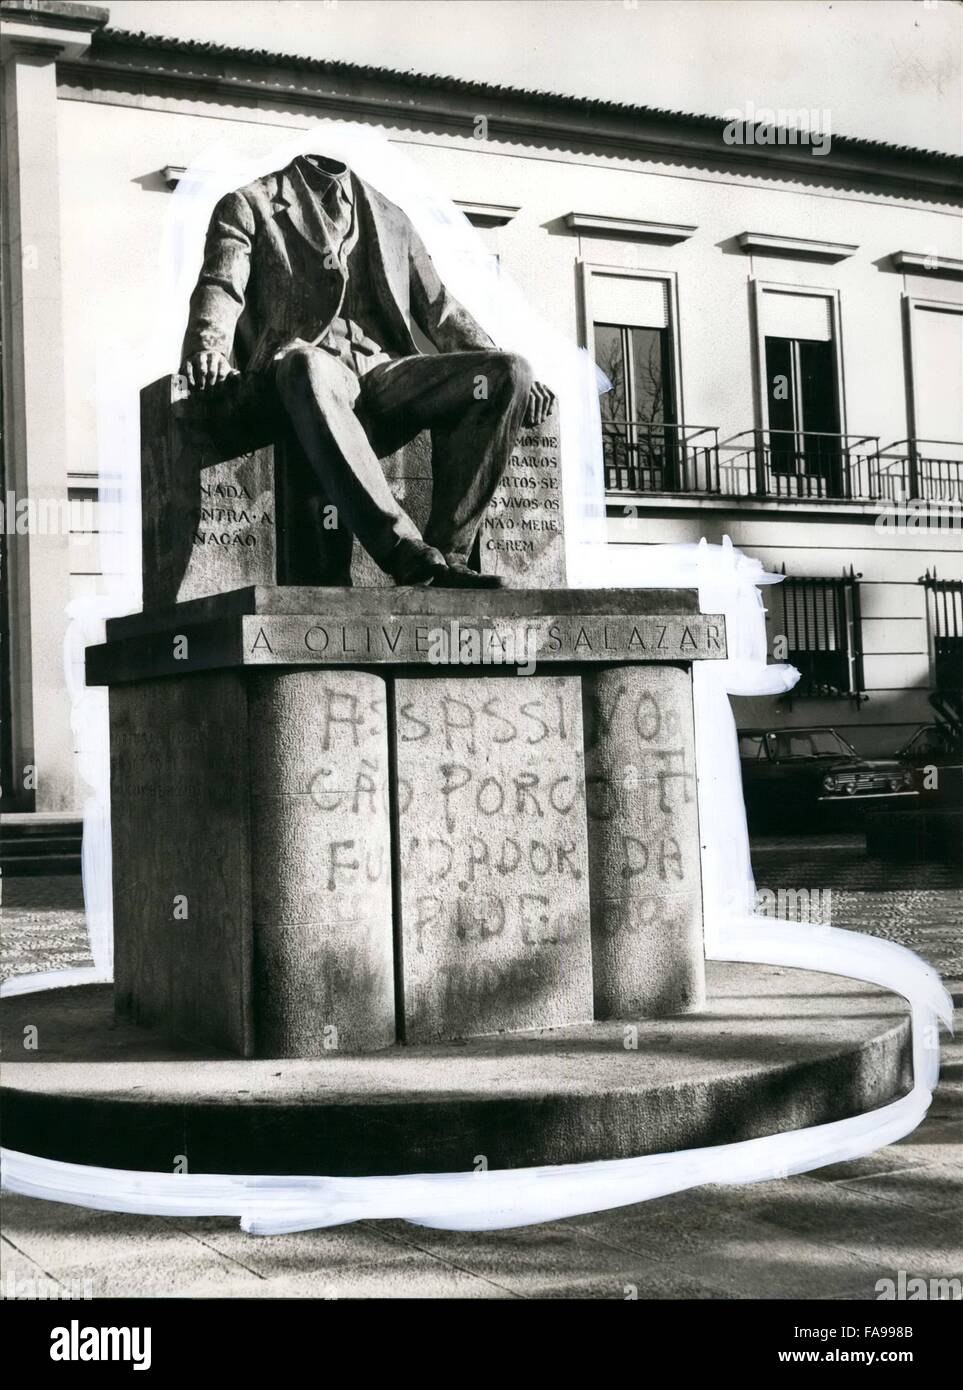 1972 - die letzte Symbol von der faschistischen Diktatur In Portugal als wurden enthauptet: Alle Denkmäler, die zu Ehren der Diktator Salazar im portugiesischen Hoheitsgebiet erhoben worden waren wurden seit dem 25 April auf verschiedene Weise, aber immer wegen Gewalt zerstört. Nur ein Denkmal widerstanden hat und nun einen Stand gegenüber des Gerichtshofs, des Dorfes "Geburt" des Mannes, regierte Portugal in absoluter Weise, seit etwa 50 Jahren, trotz der verschiedenen Maßnahmen, die unter gegen die Statue, die von den Bewohnern von Santa Comba Dao übernommen worden war. Tatsächlich Stockfoto